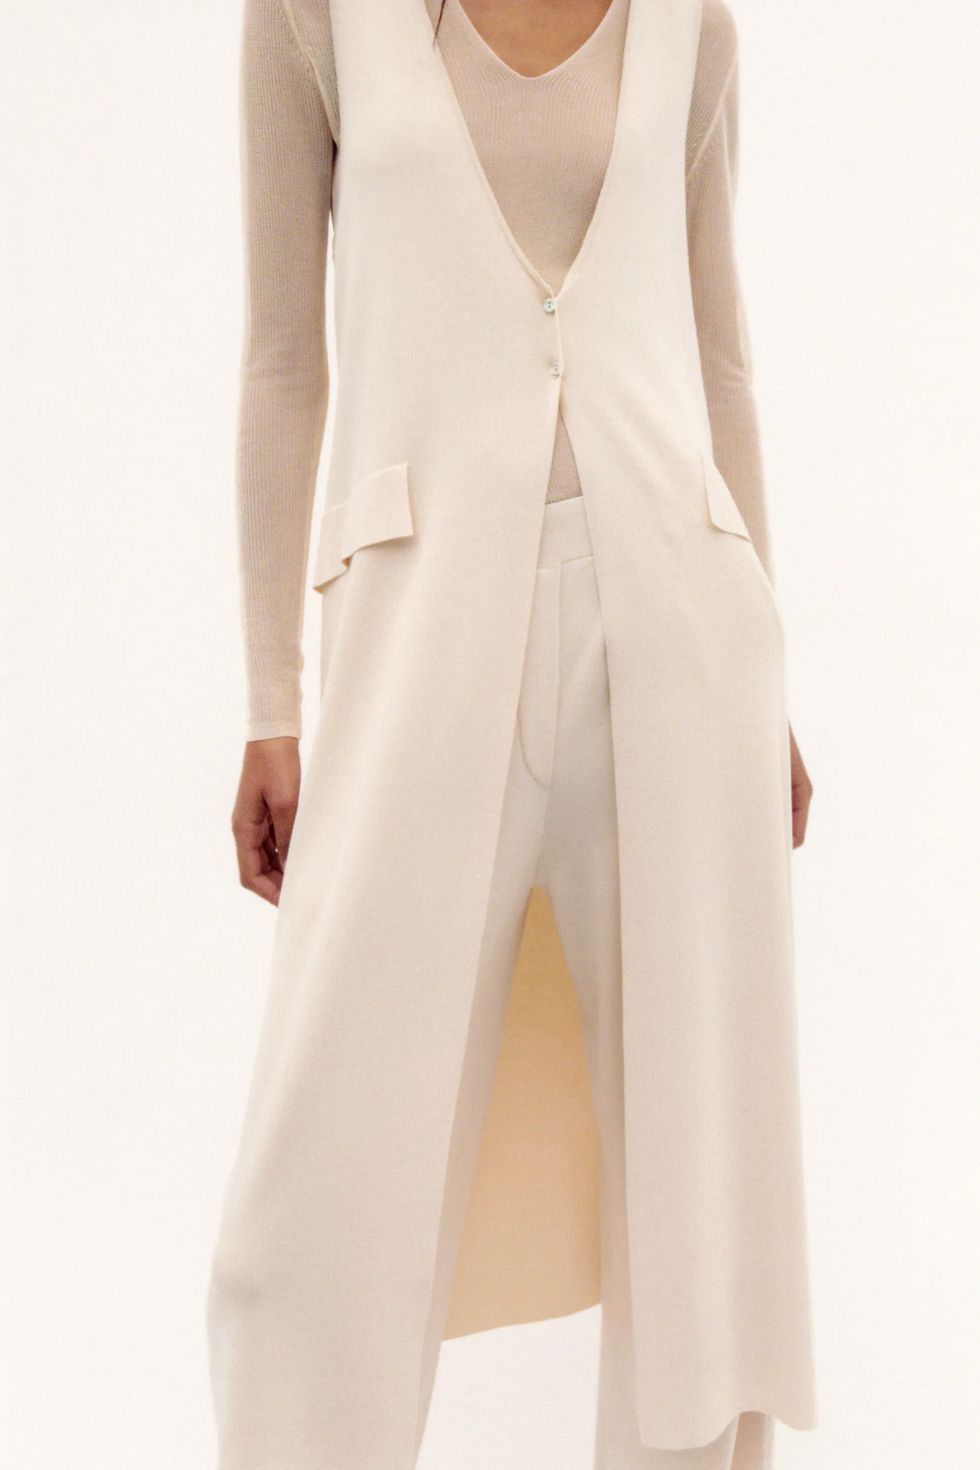 Este conjunto de Zara con chaleco y pantalones anchos es el más